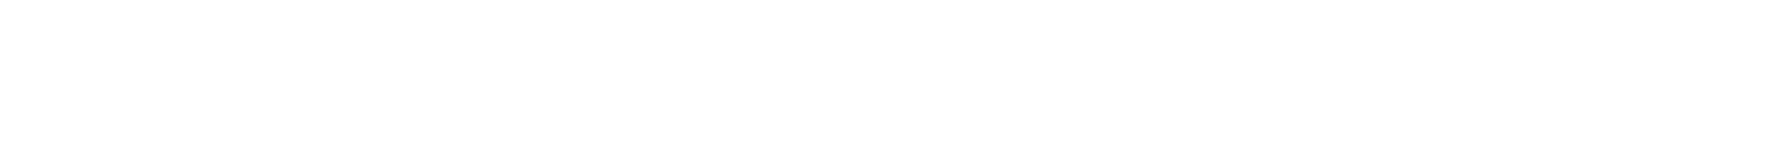 James River Group logo large for dark backgrounds (transparent PNG)